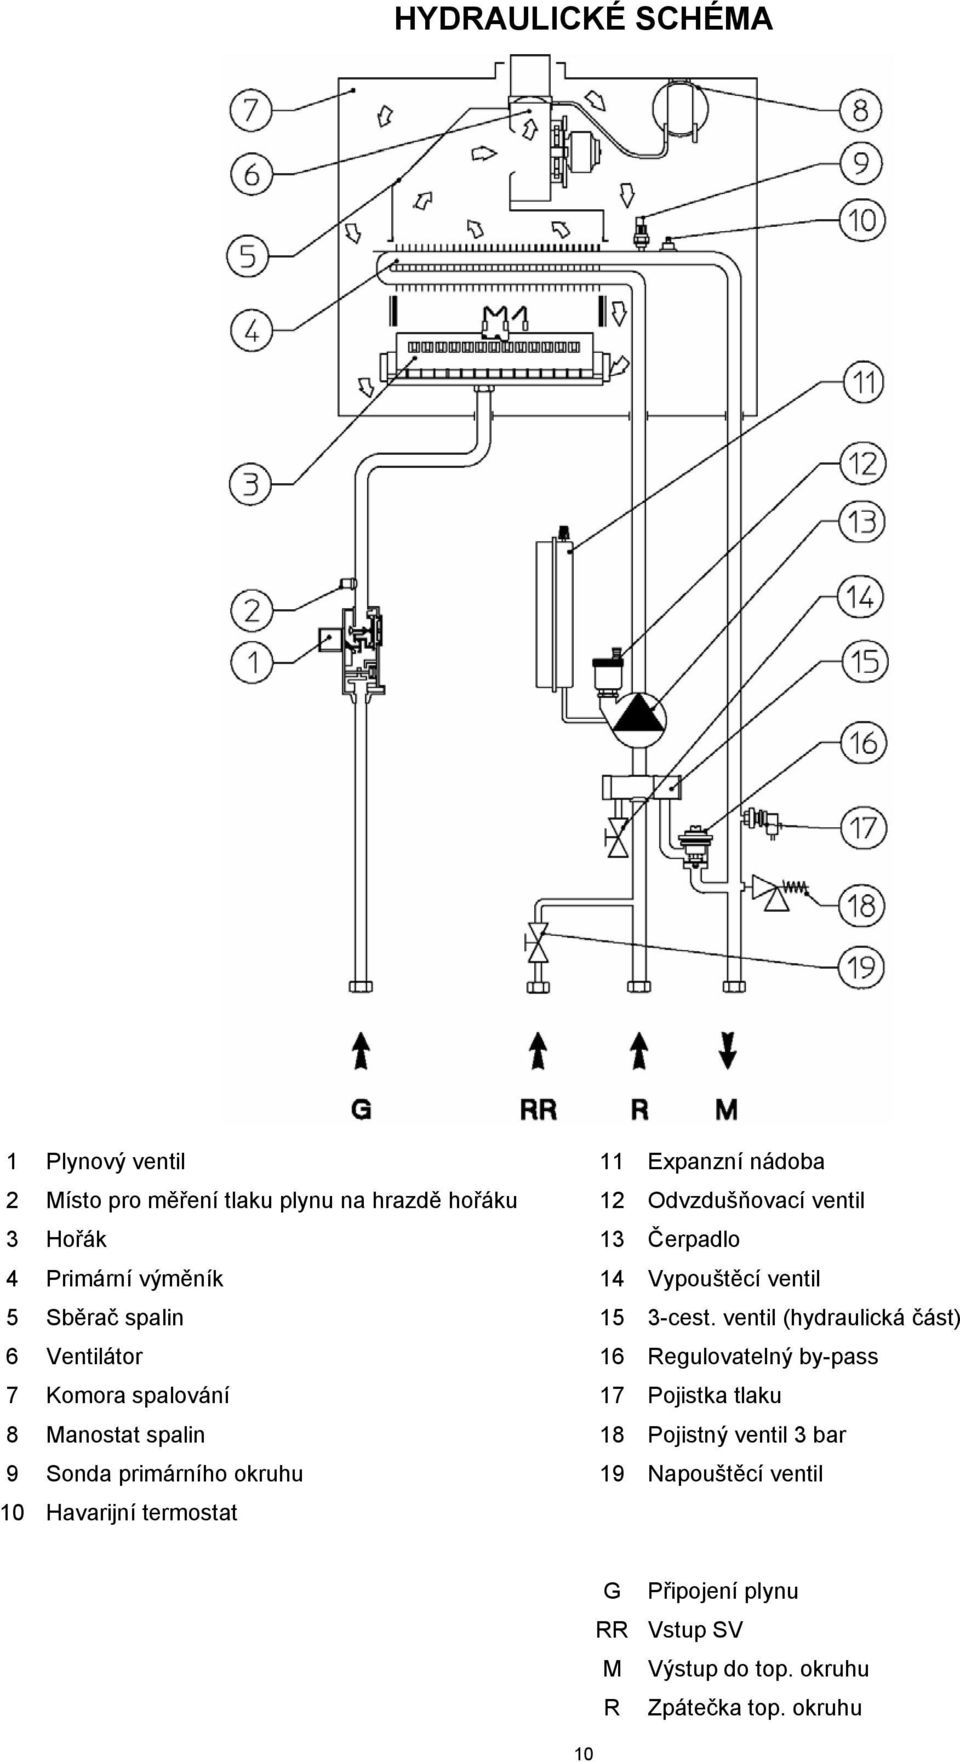 ventil (hydraulická část) 6 Ventilátor 16 Regulovatelný by-pass 7 Komora spalování 17 Pojistka tlaku 8 Manostat spalin 18